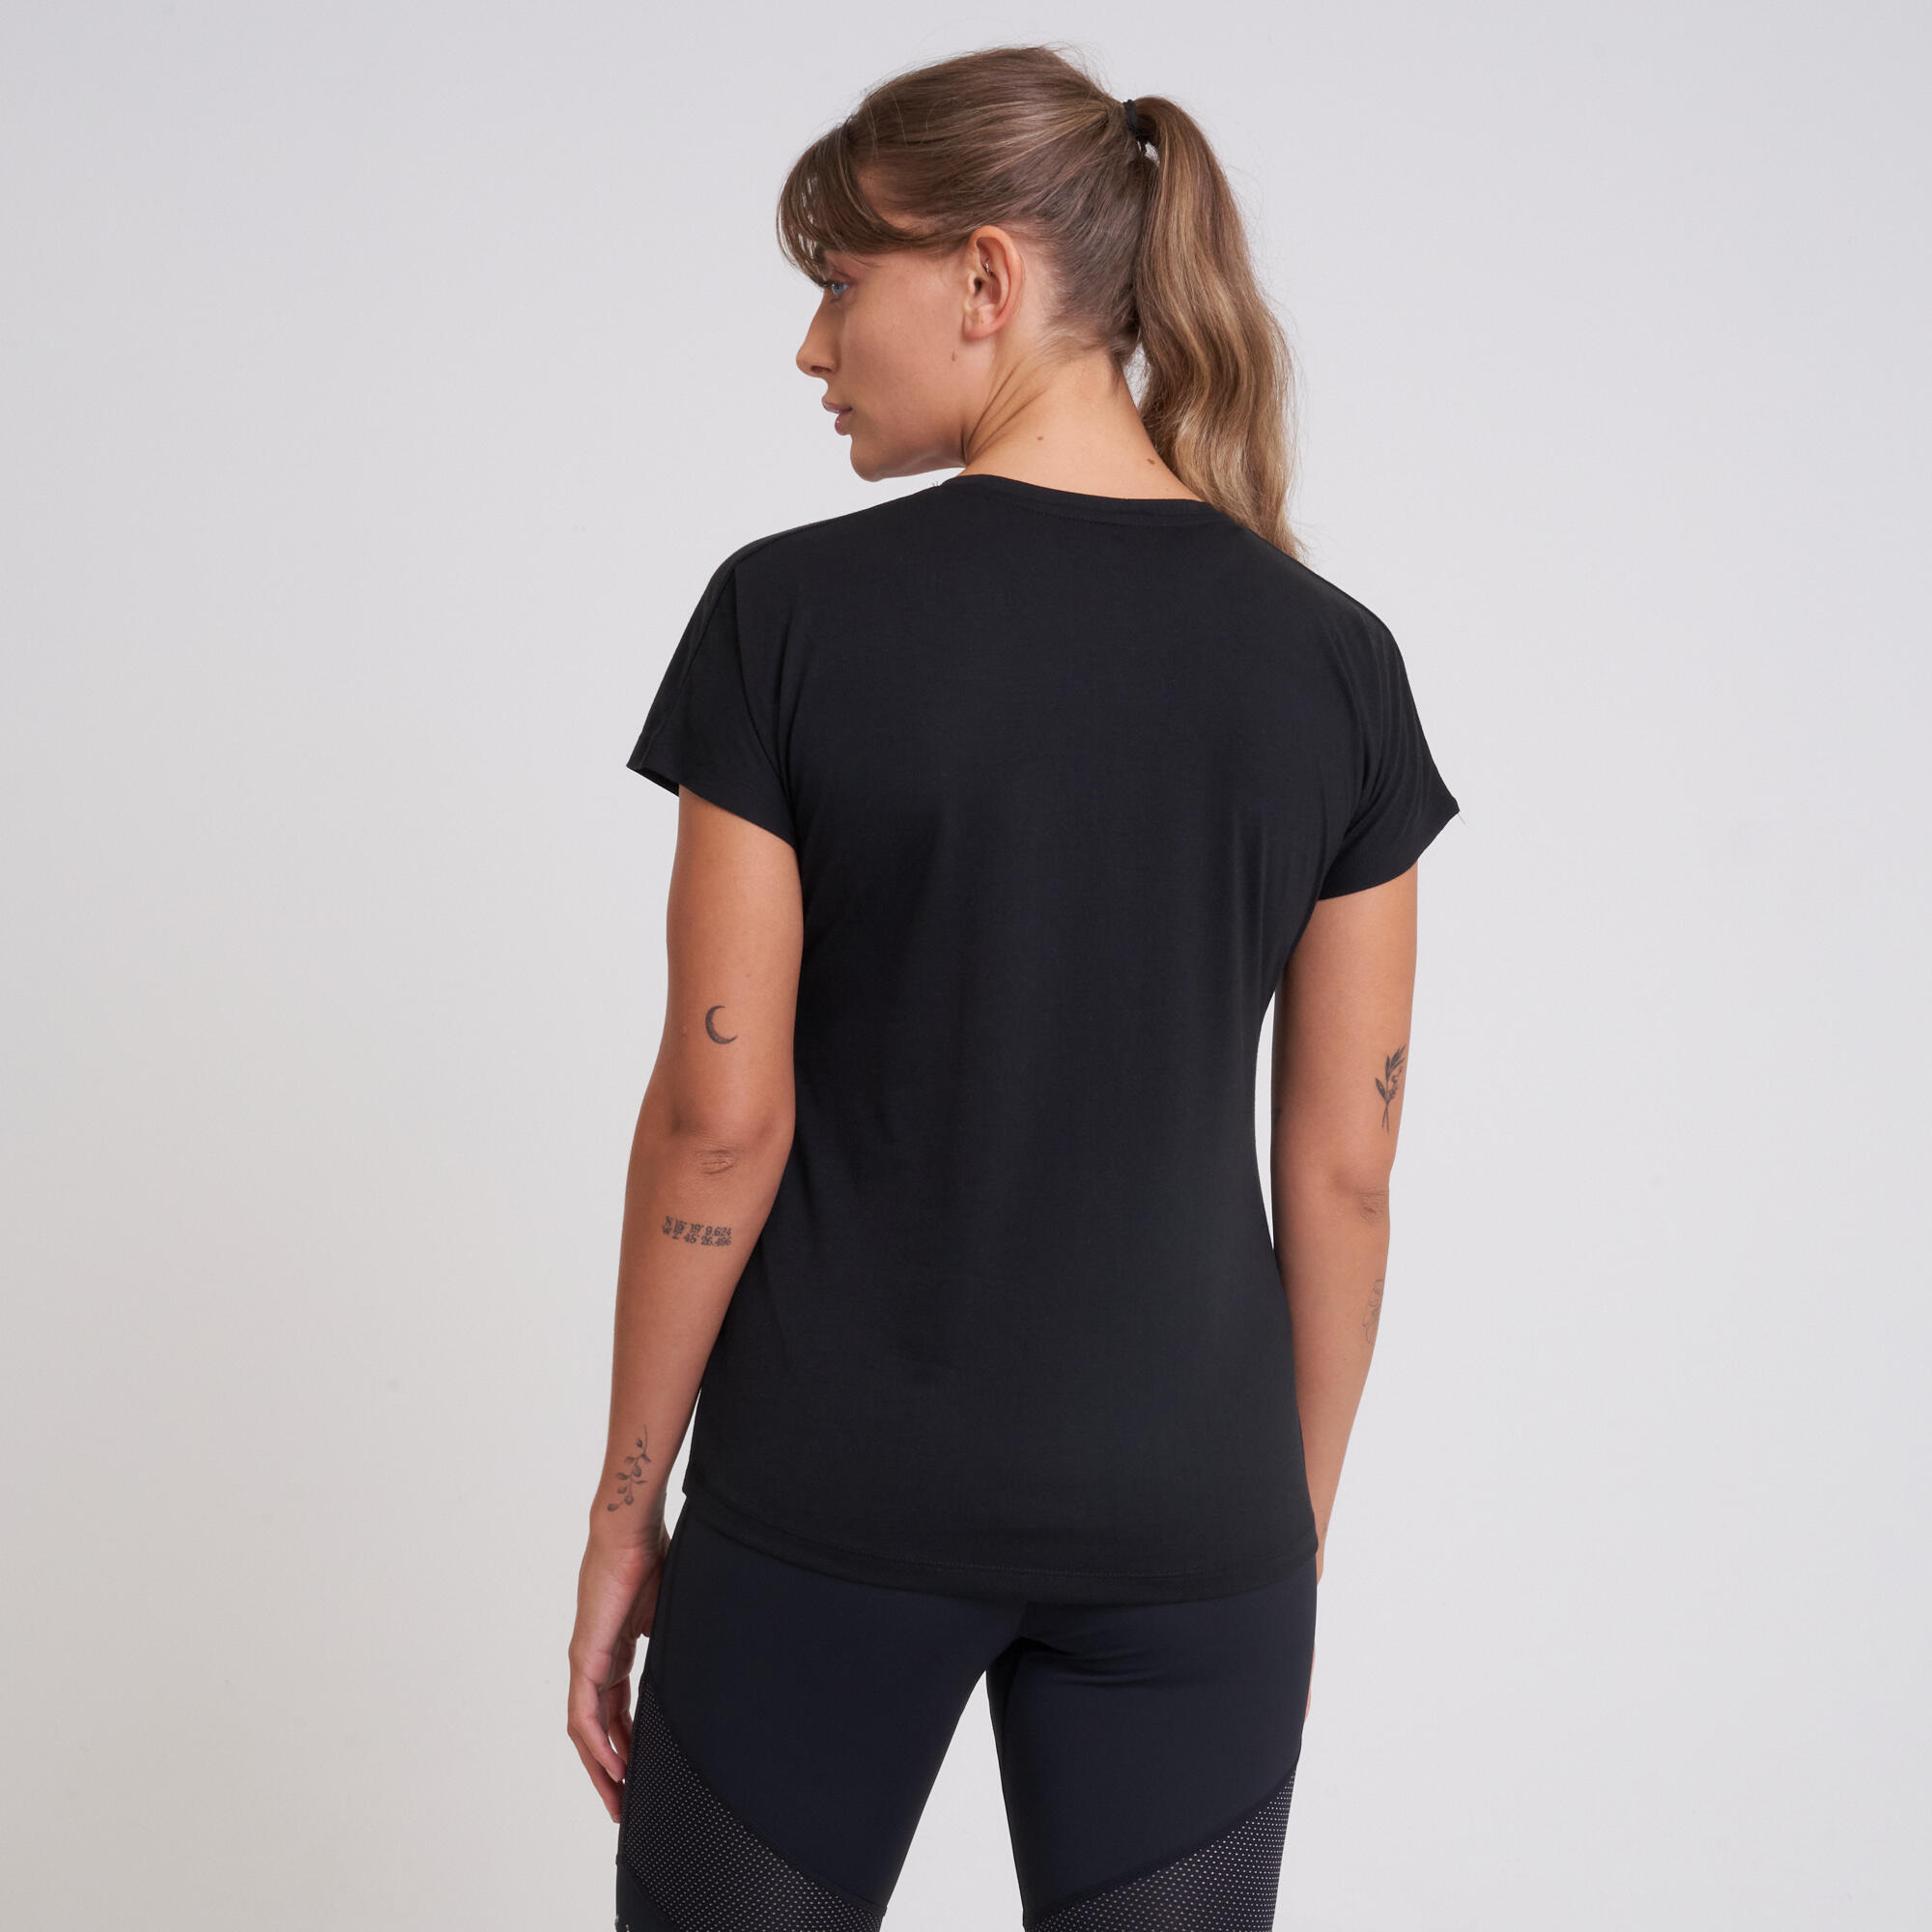 Crystallize Women's Fitness Short Sleeve  T-Shirt - Black 3/5